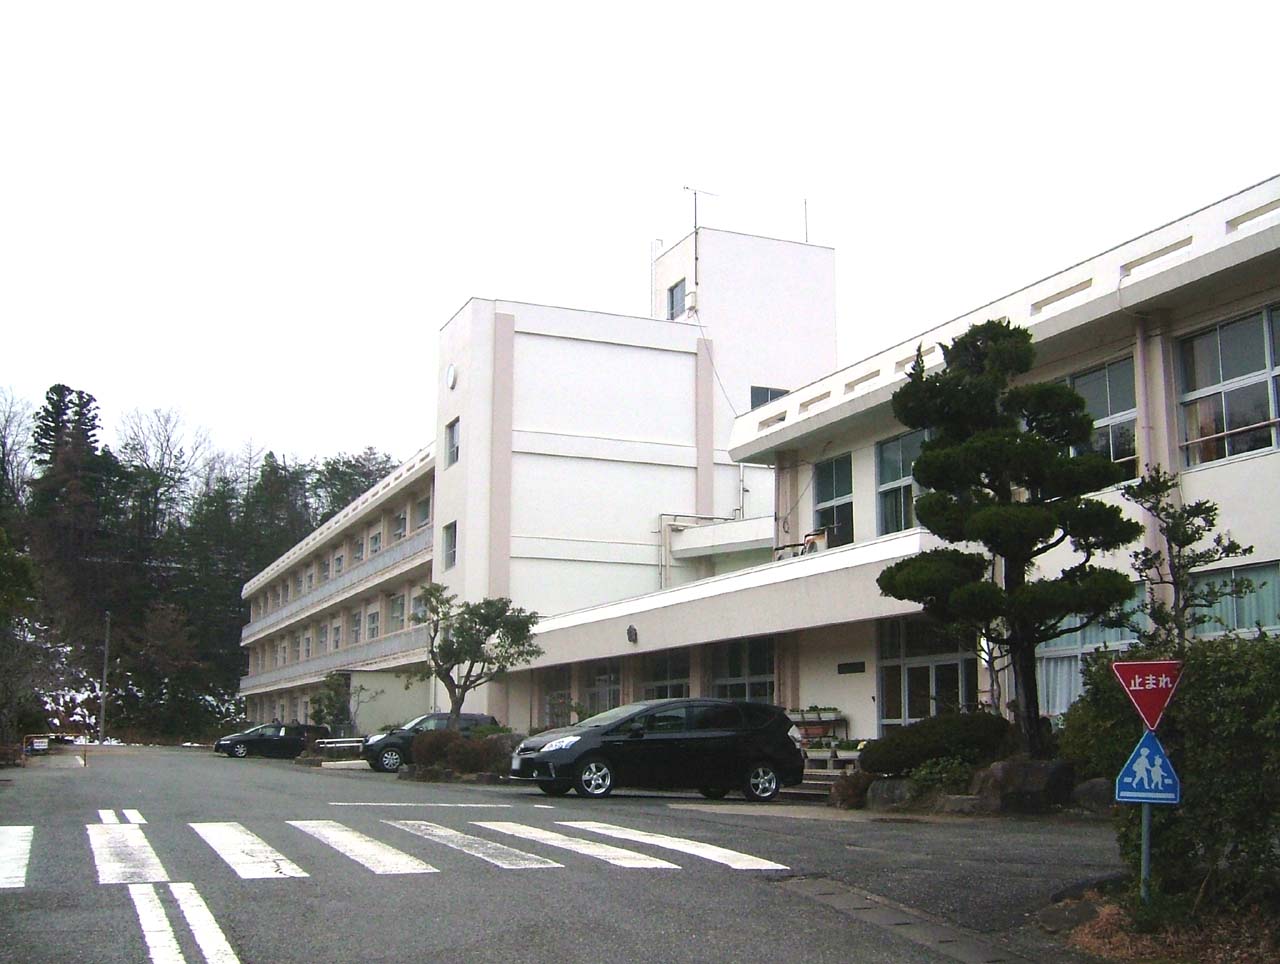 Primary school. Toyooka City Gosho to elementary school (elementary school) 2165m